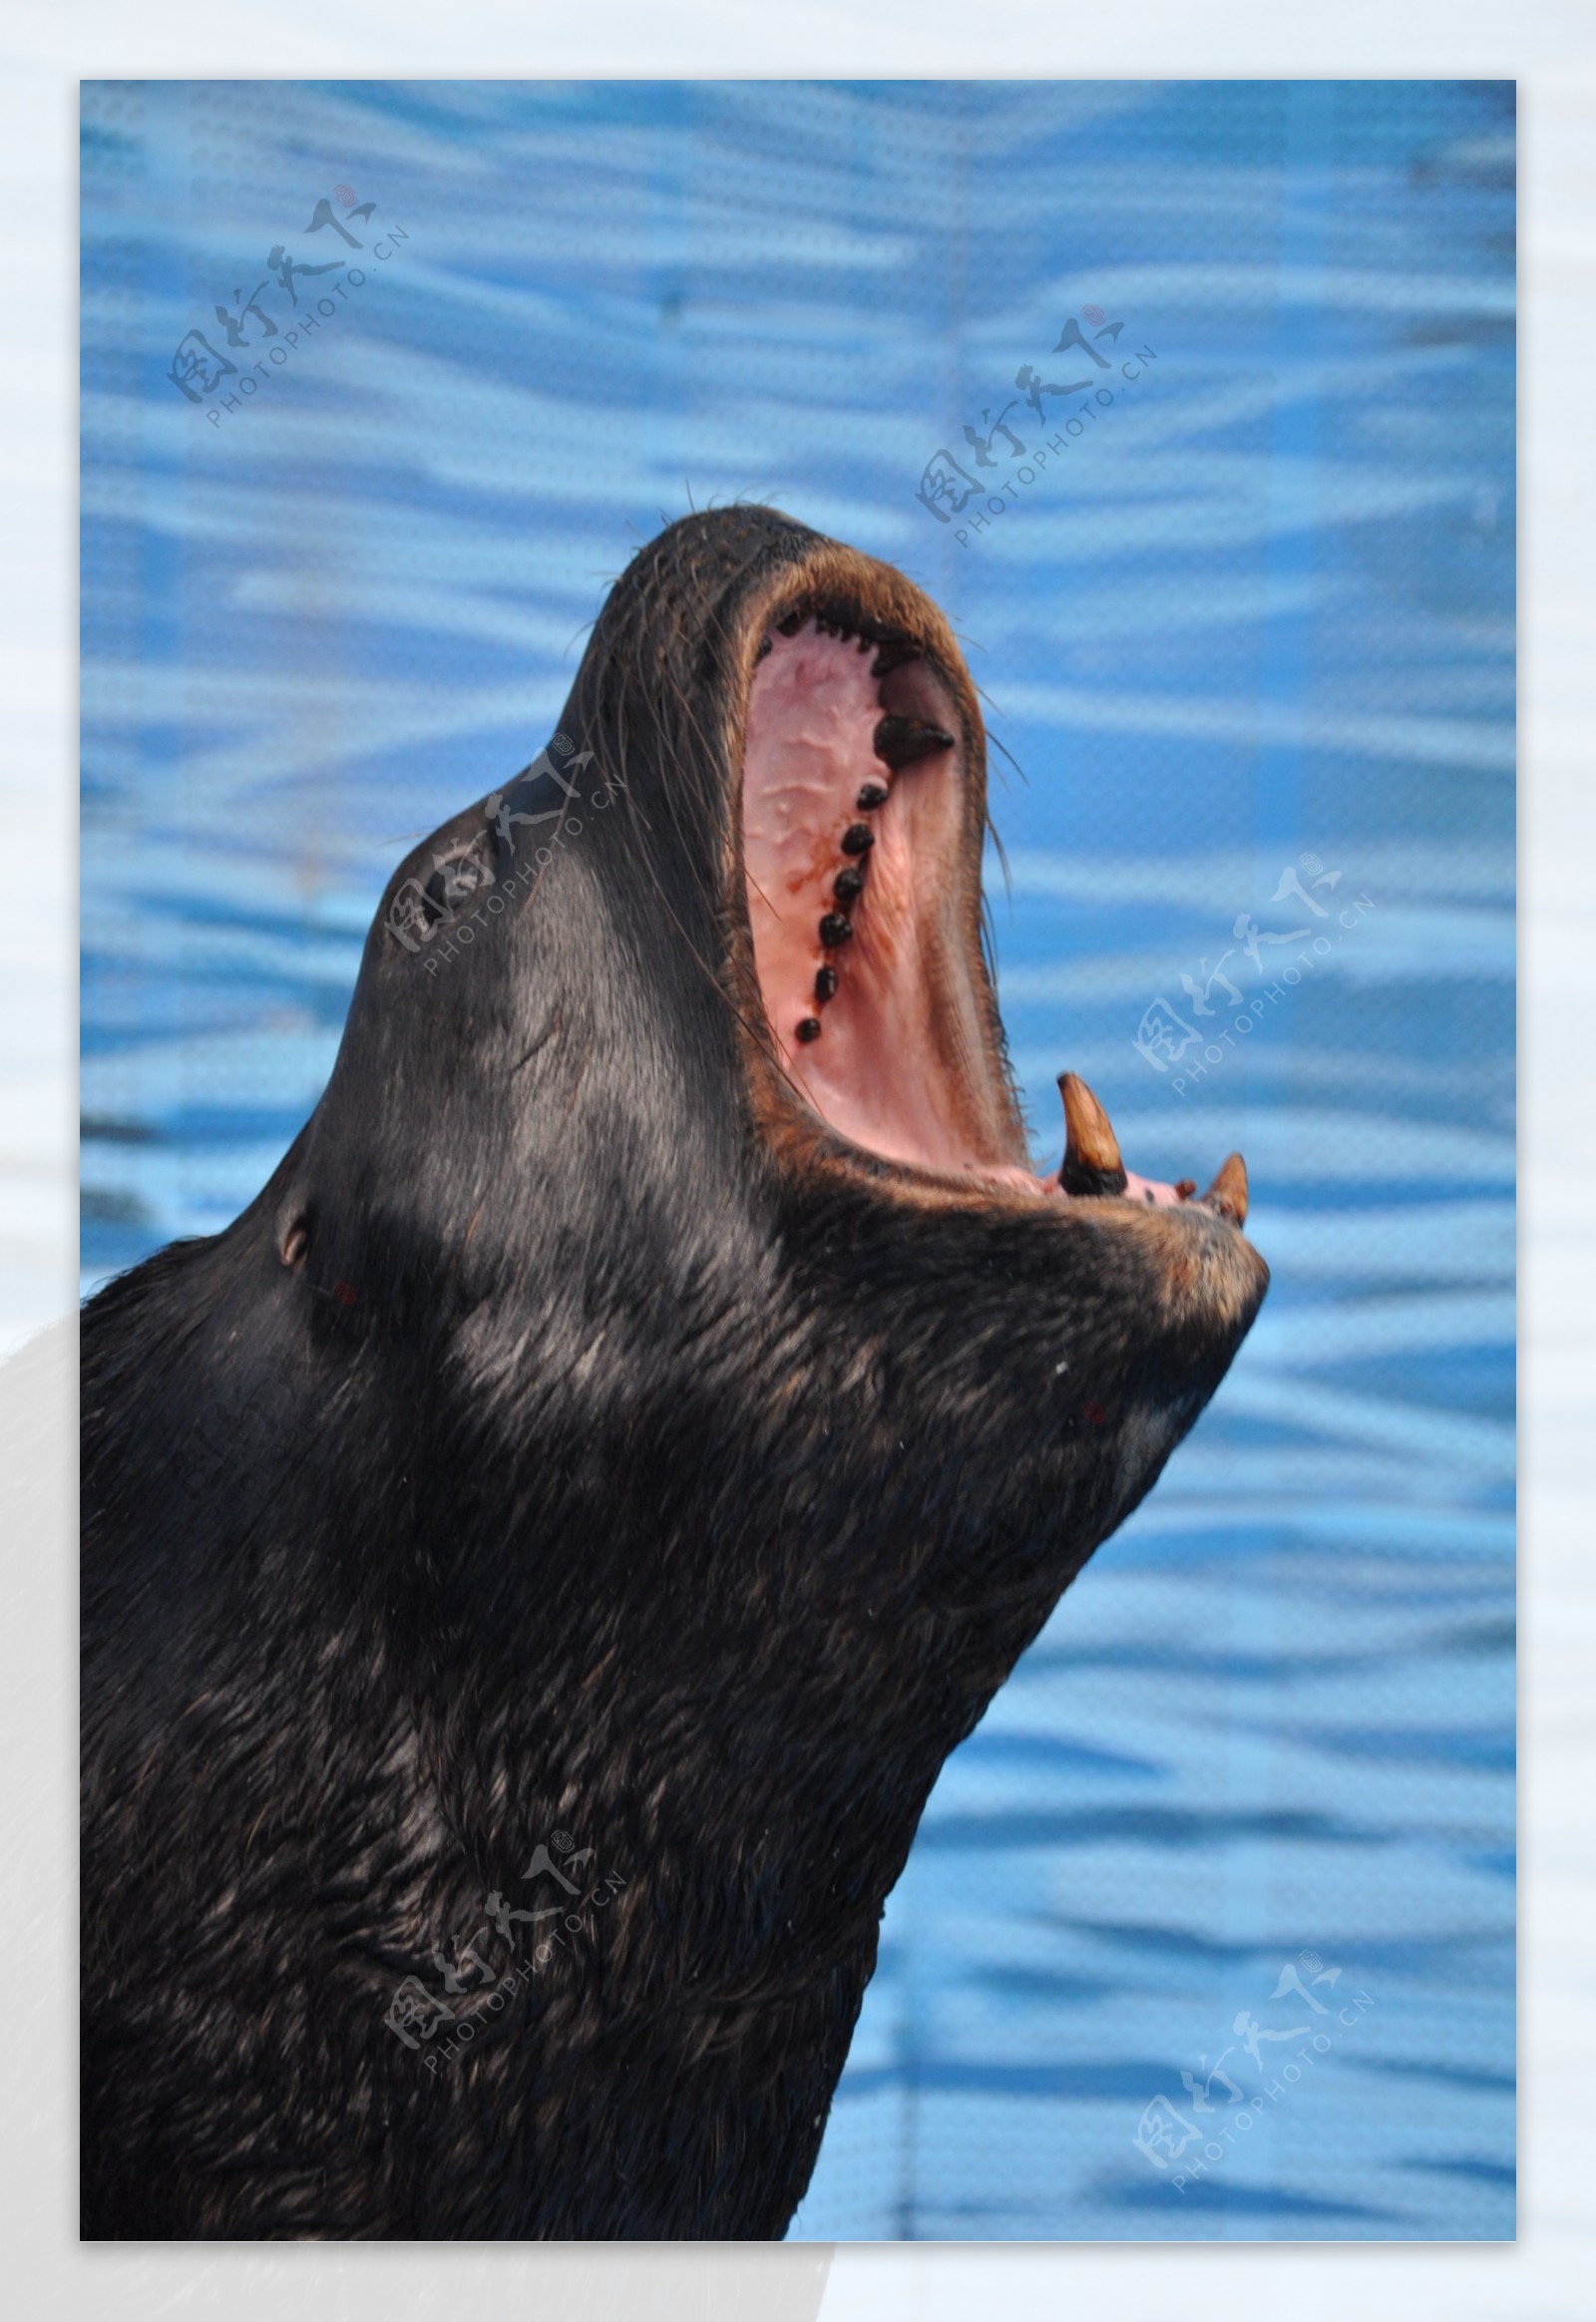 叫喊的海狮在南极洲 库存图片. 图片 包括有 火箭筒, 在前, 嗥叫, 海洋, 鸭脚板, 野生生物, 哺乳动物 - 48789381